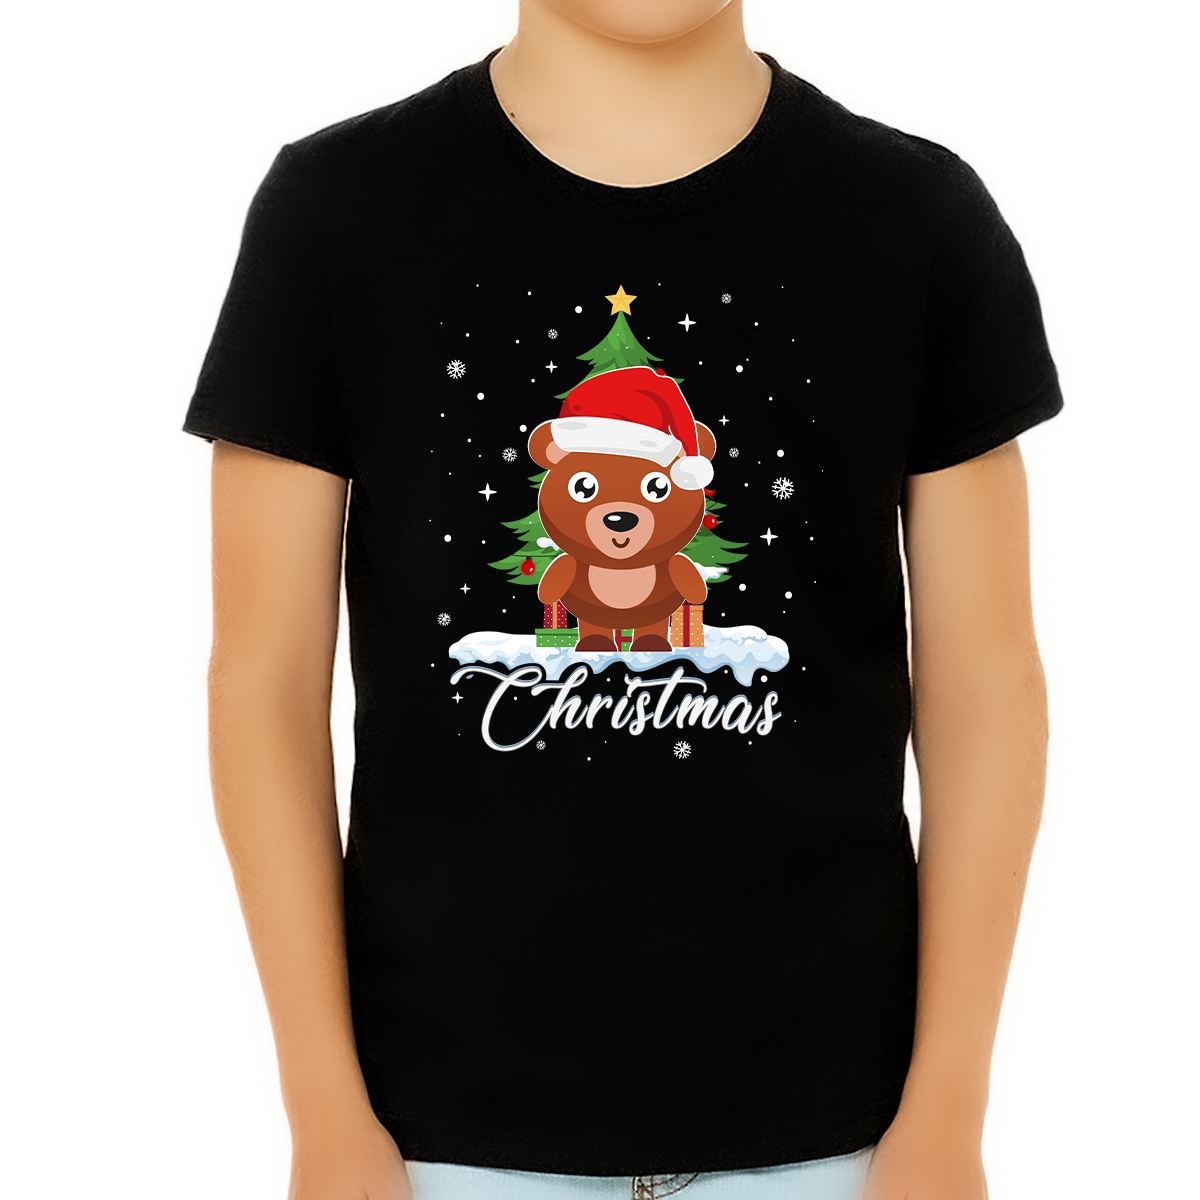 Boys Christmas Shirt Christmas Shirt for Boys Santa Hat Bear Christmas Shirts for Kids